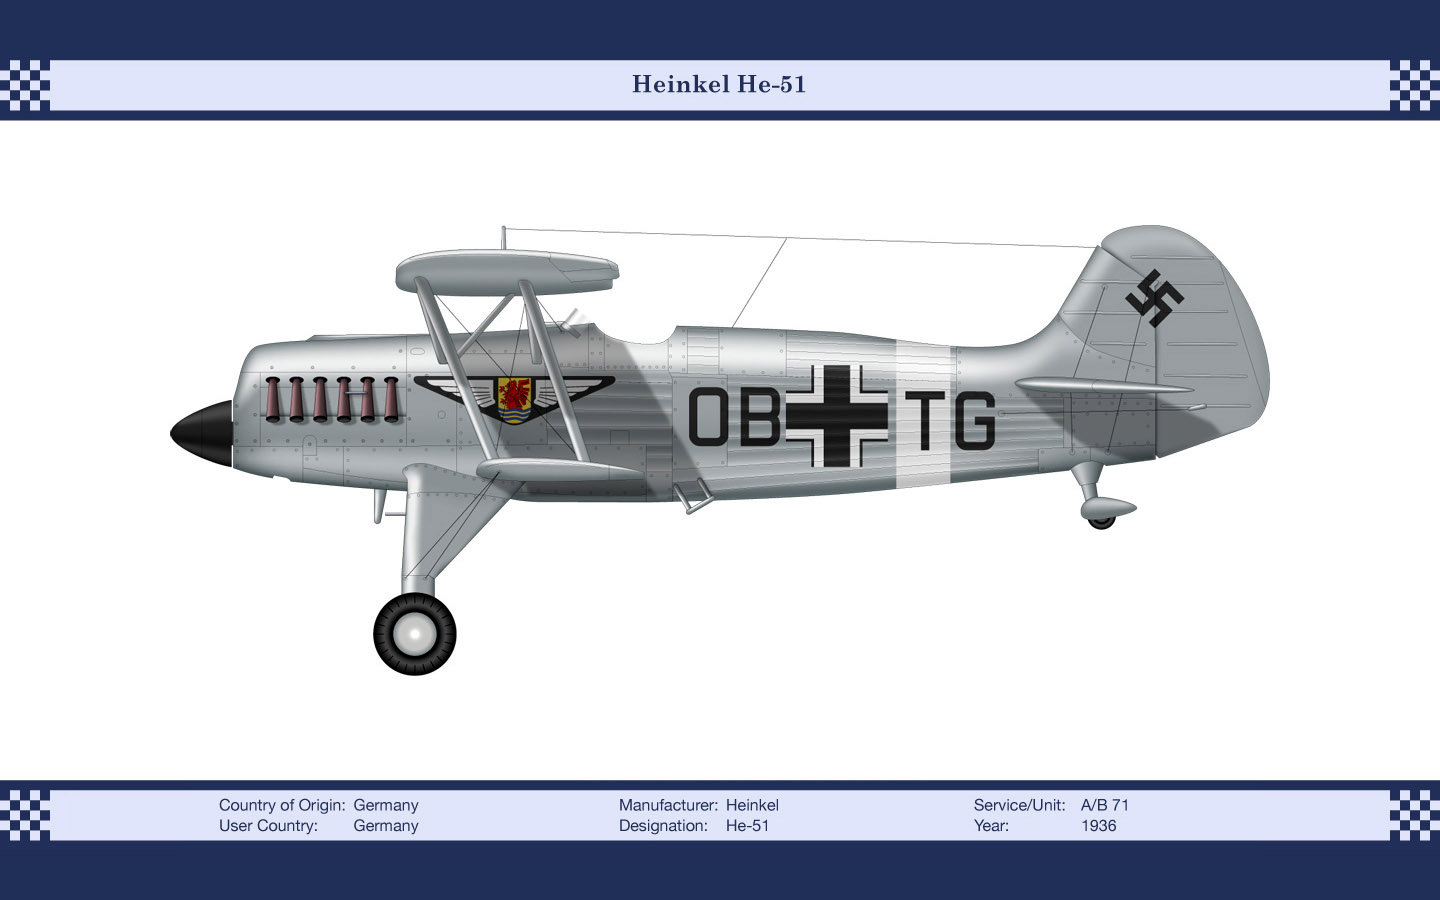 367386 descargar imagen militar, heinkel he 51, aeronave militar: fondos de pantalla y protectores de pantalla gratis